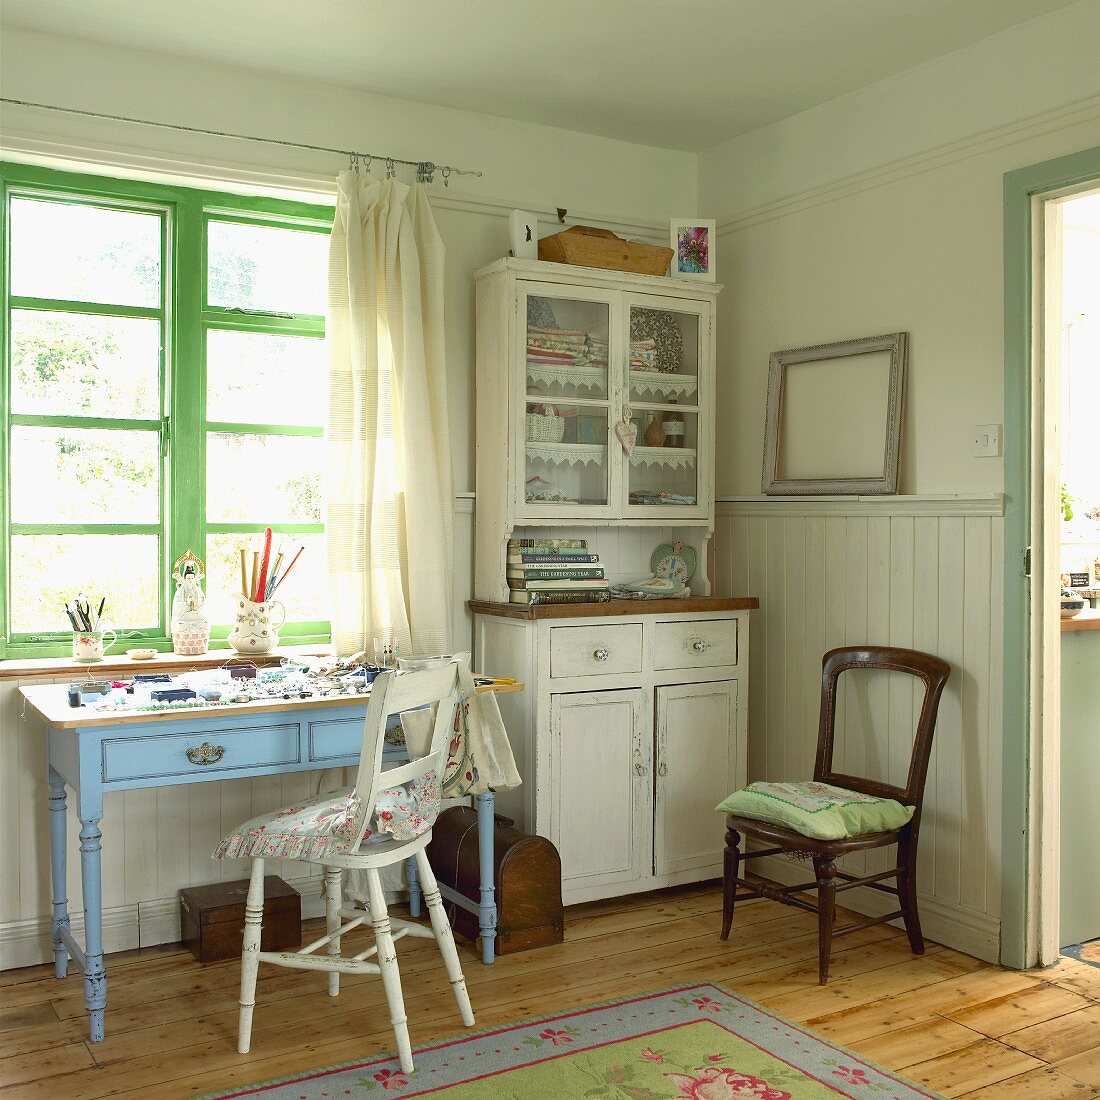 Halbhoch vertäfelter Wohnraum in Pastellfarben mit Vitrinenschrank und kleinem Schubladentisch vor grün lackierten Fensterrahmen